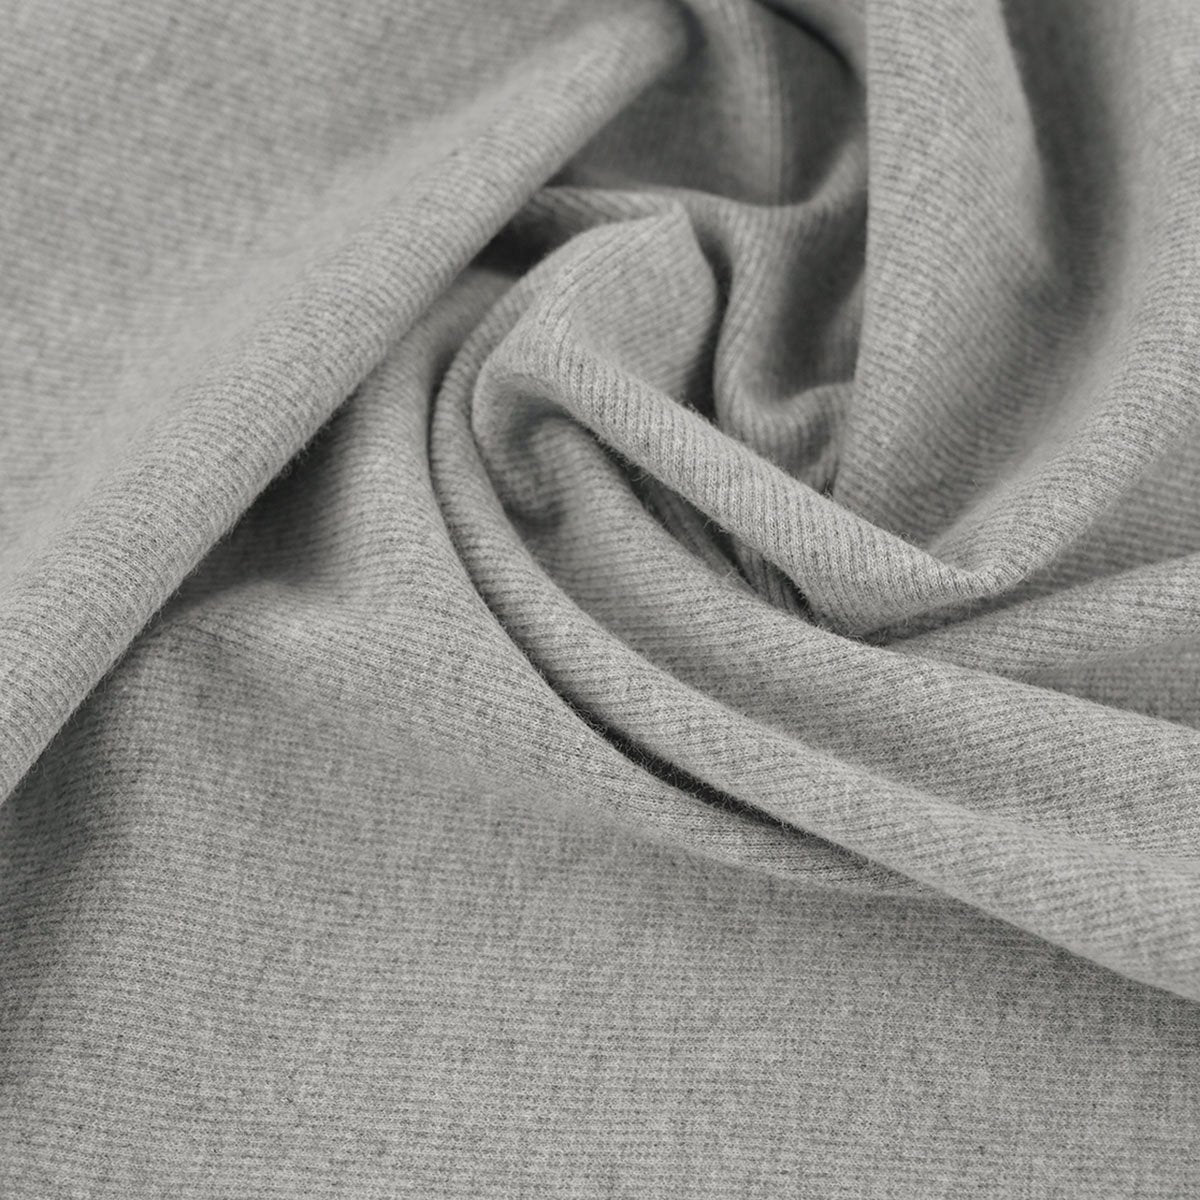 Grey Rib Stretch Knit Fabric 96512